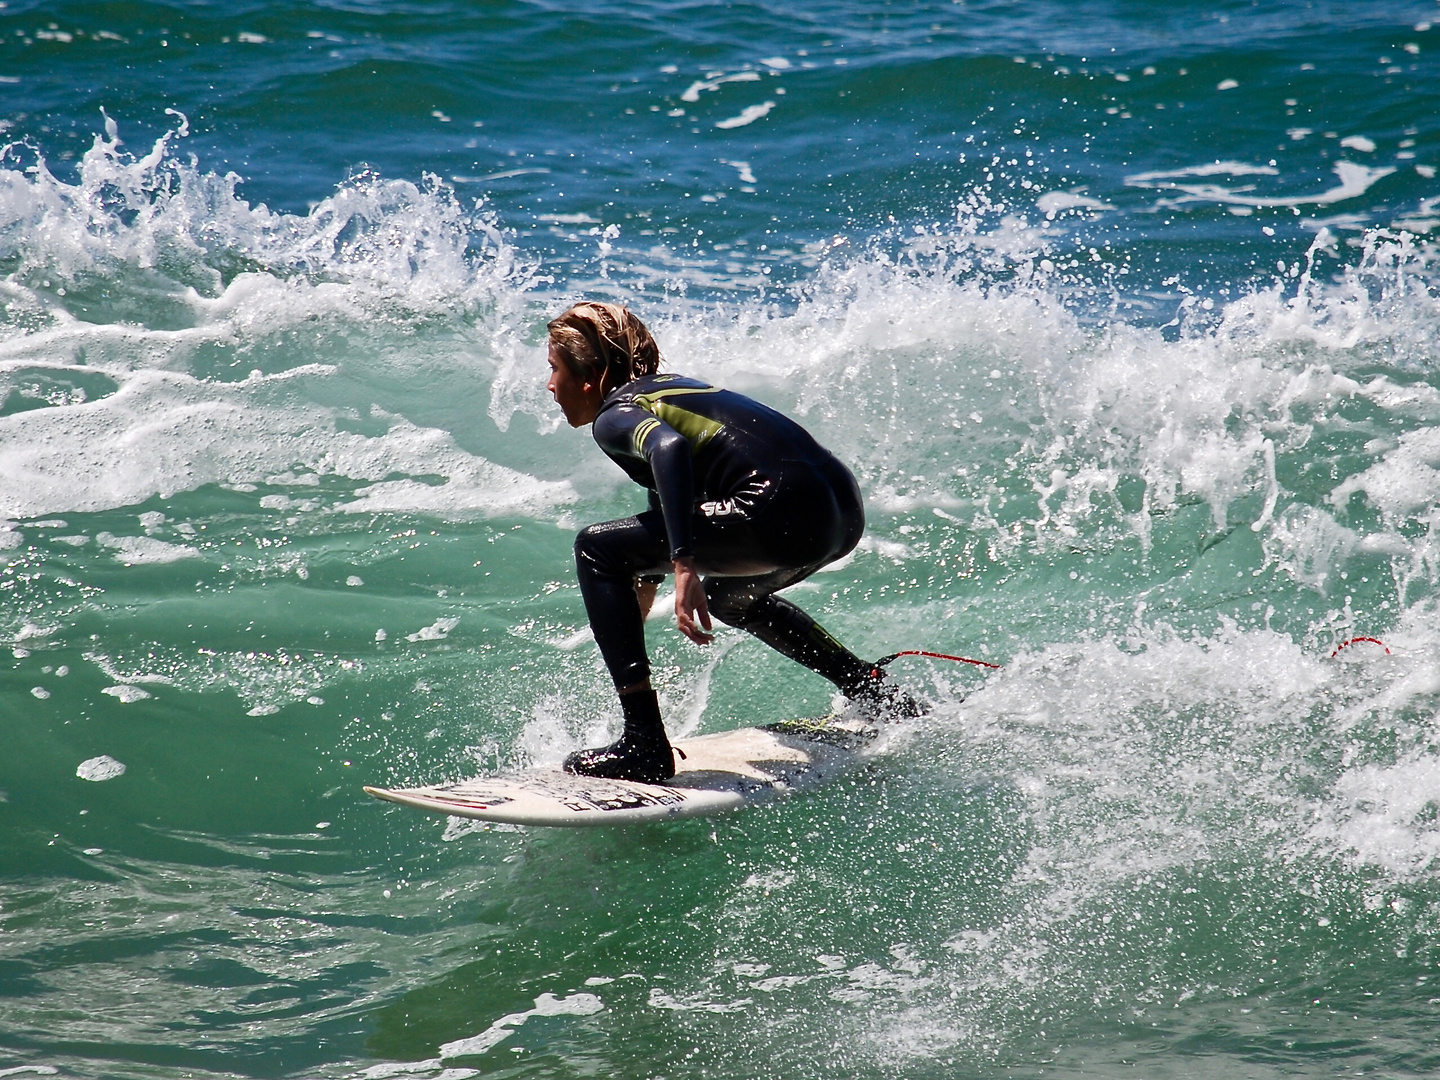 Noch ein Surfer